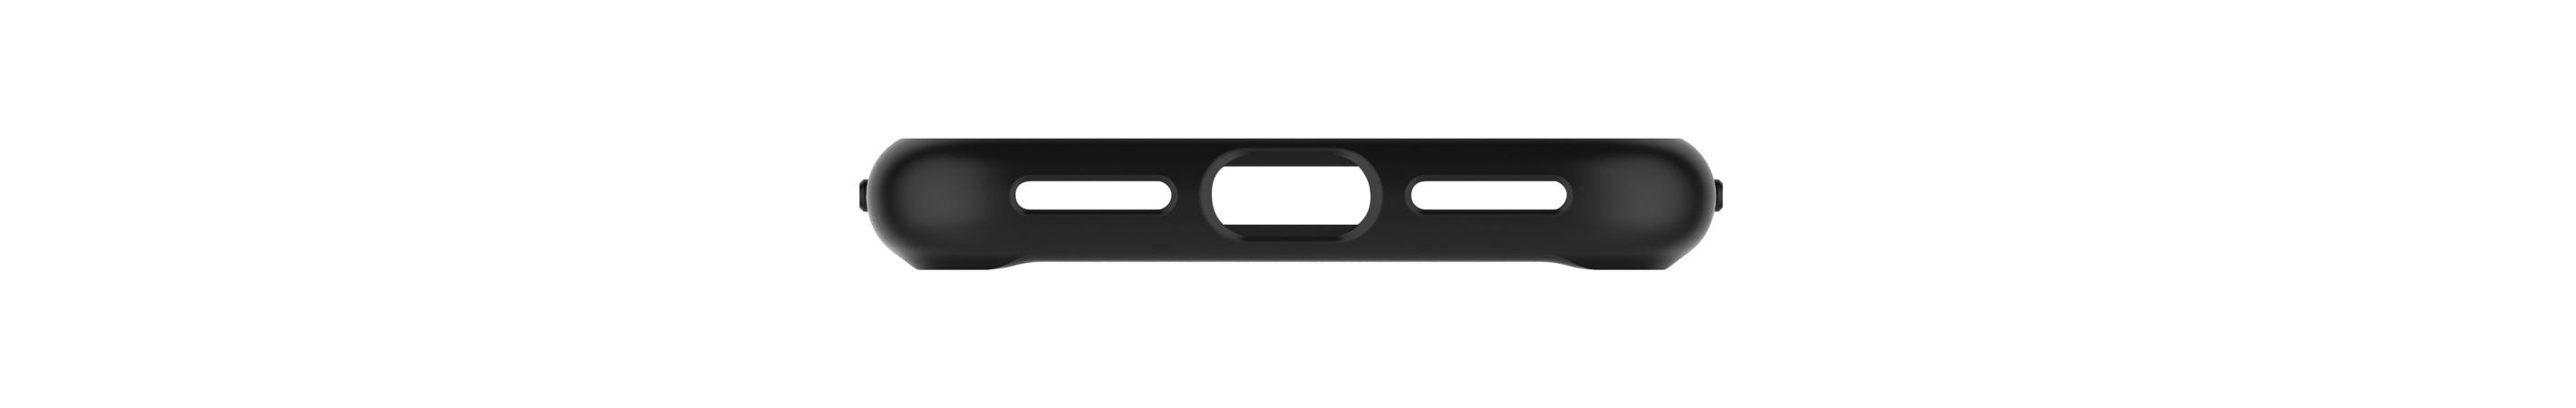 Чехол Spigen для iPhone X/XS Ultra Hybrid Матовый Черный, изображение 7